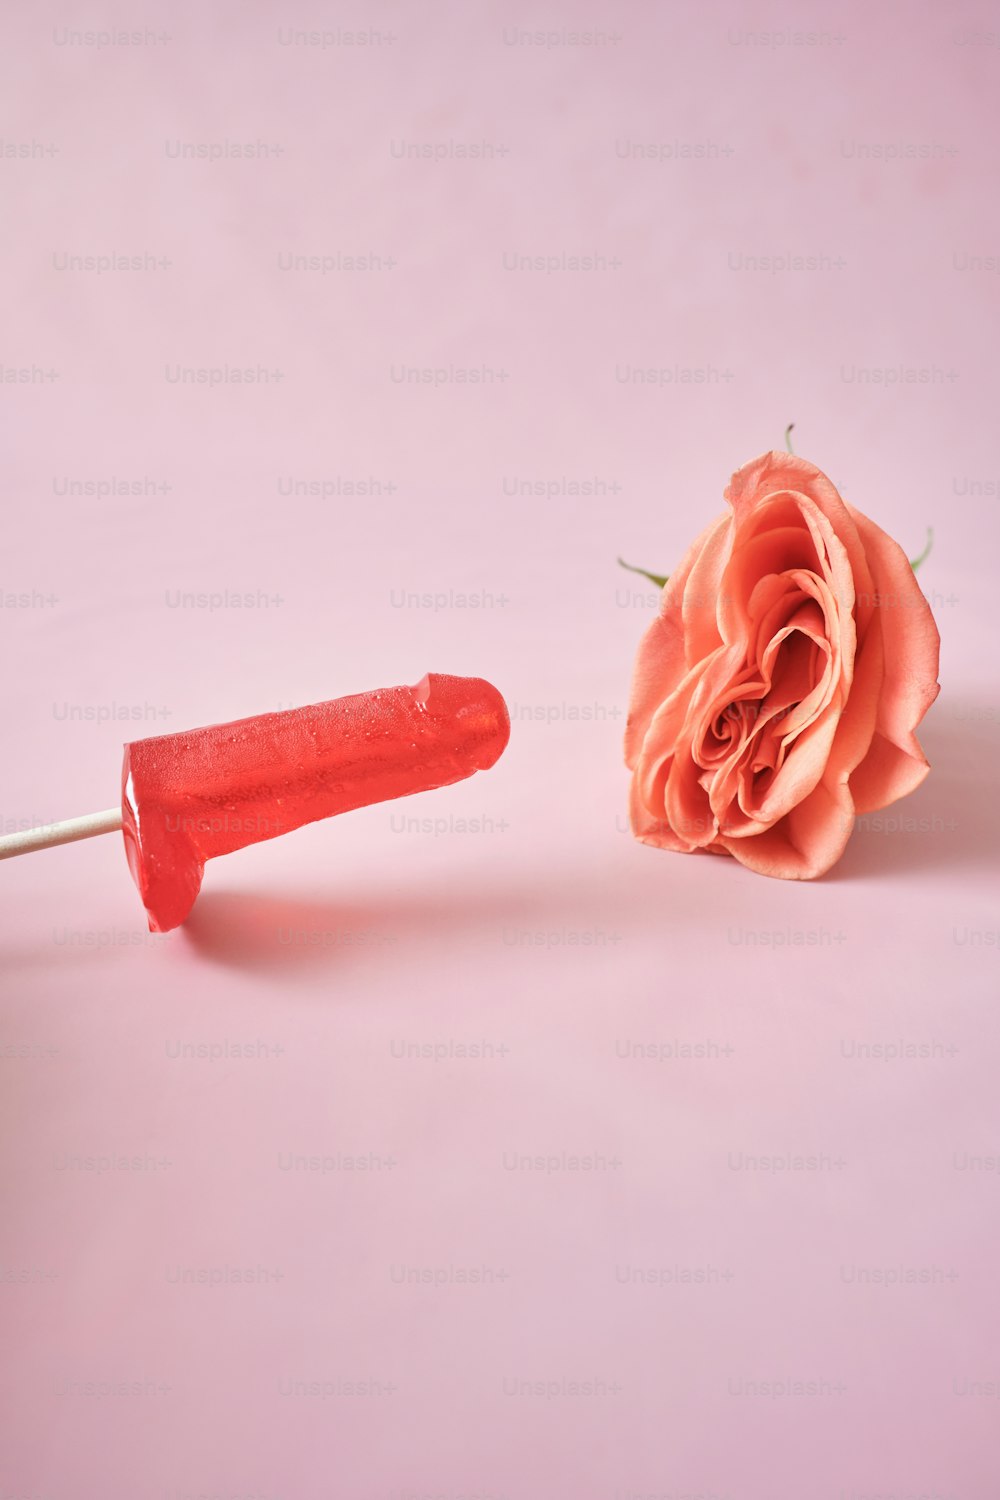 uma rosa rosa e um objeto de plástico vermelho em um fundo rosa